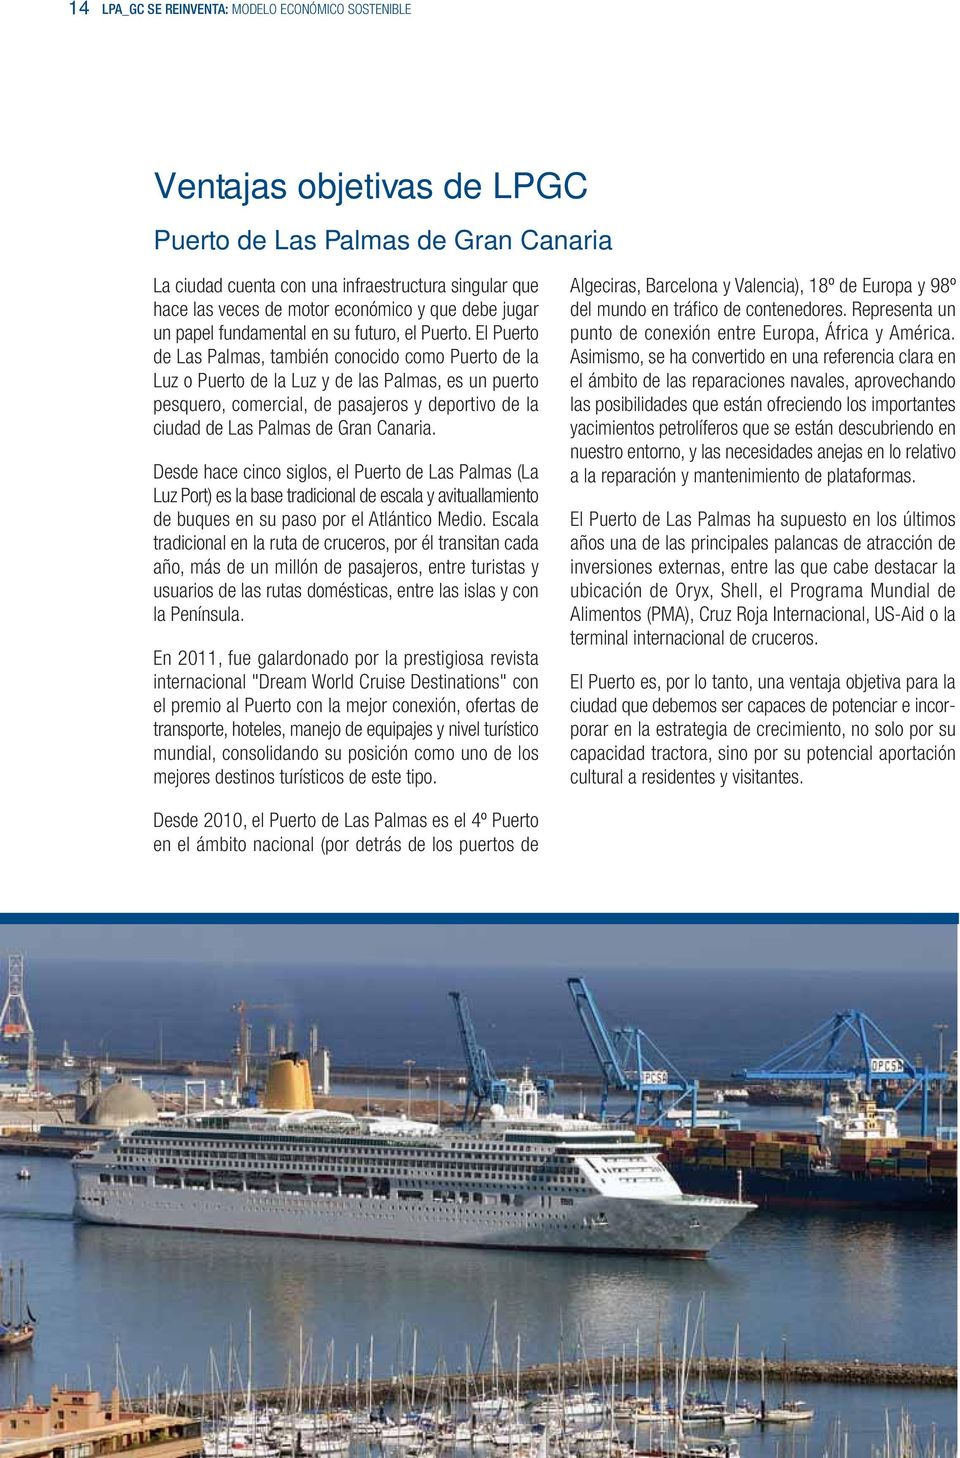 El Puerto de Las Palmas, también conocido como Puerto de la Luz o Puerto de la Luz y de las Palmas, es un puerto pesquero, comercial, de pasajeros y deportivo de la ciudad de Las Palmas de Gran